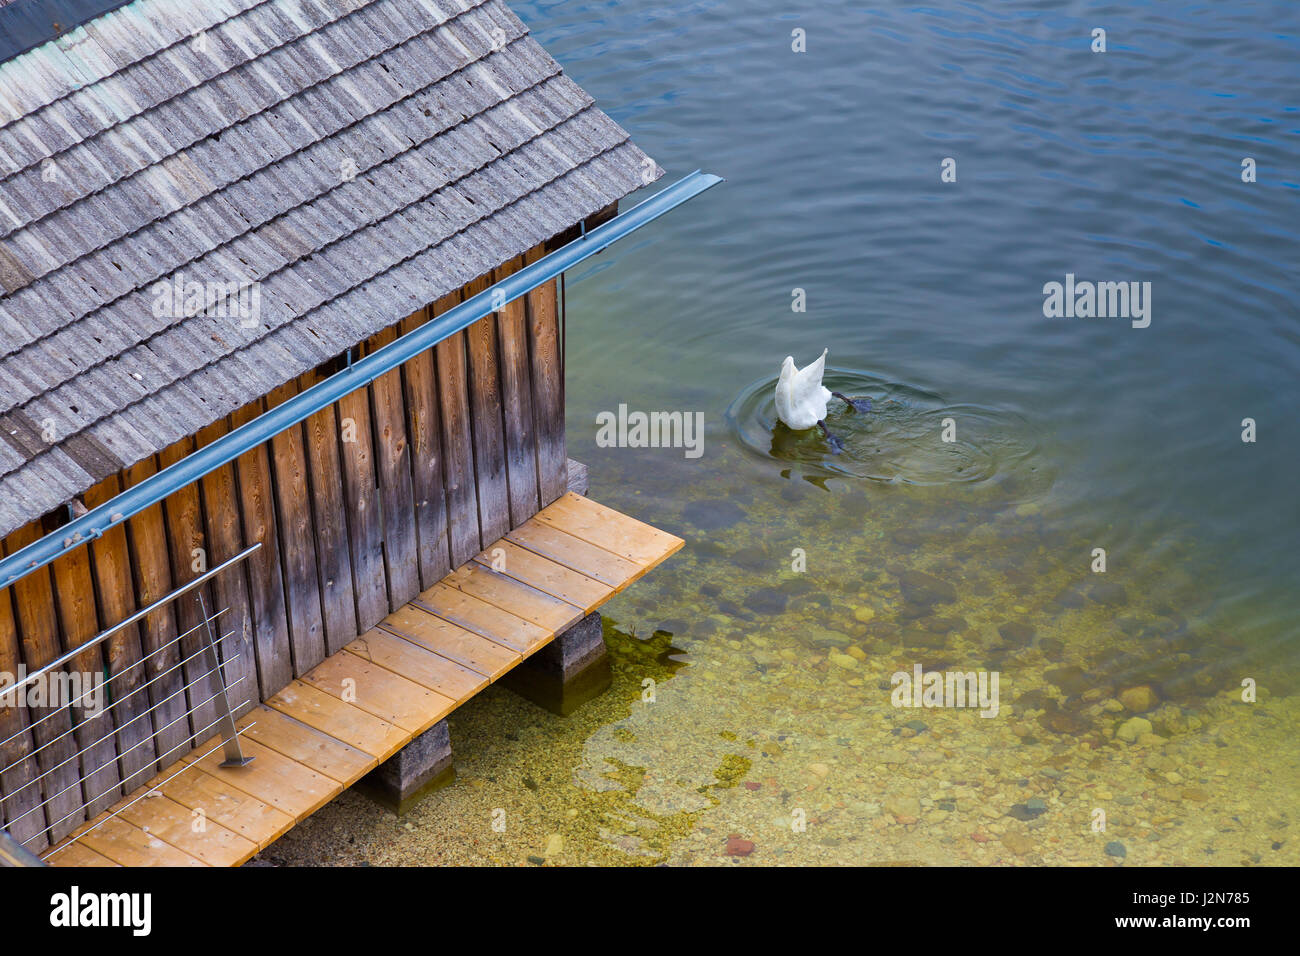 Weisser Schwan Jagd in der Nähe ein Docking-Haus durch Eintauchen der Kopf unter Wasser zu fangen Fische, seine Füße und Heck zeigt nach oben Stockfoto